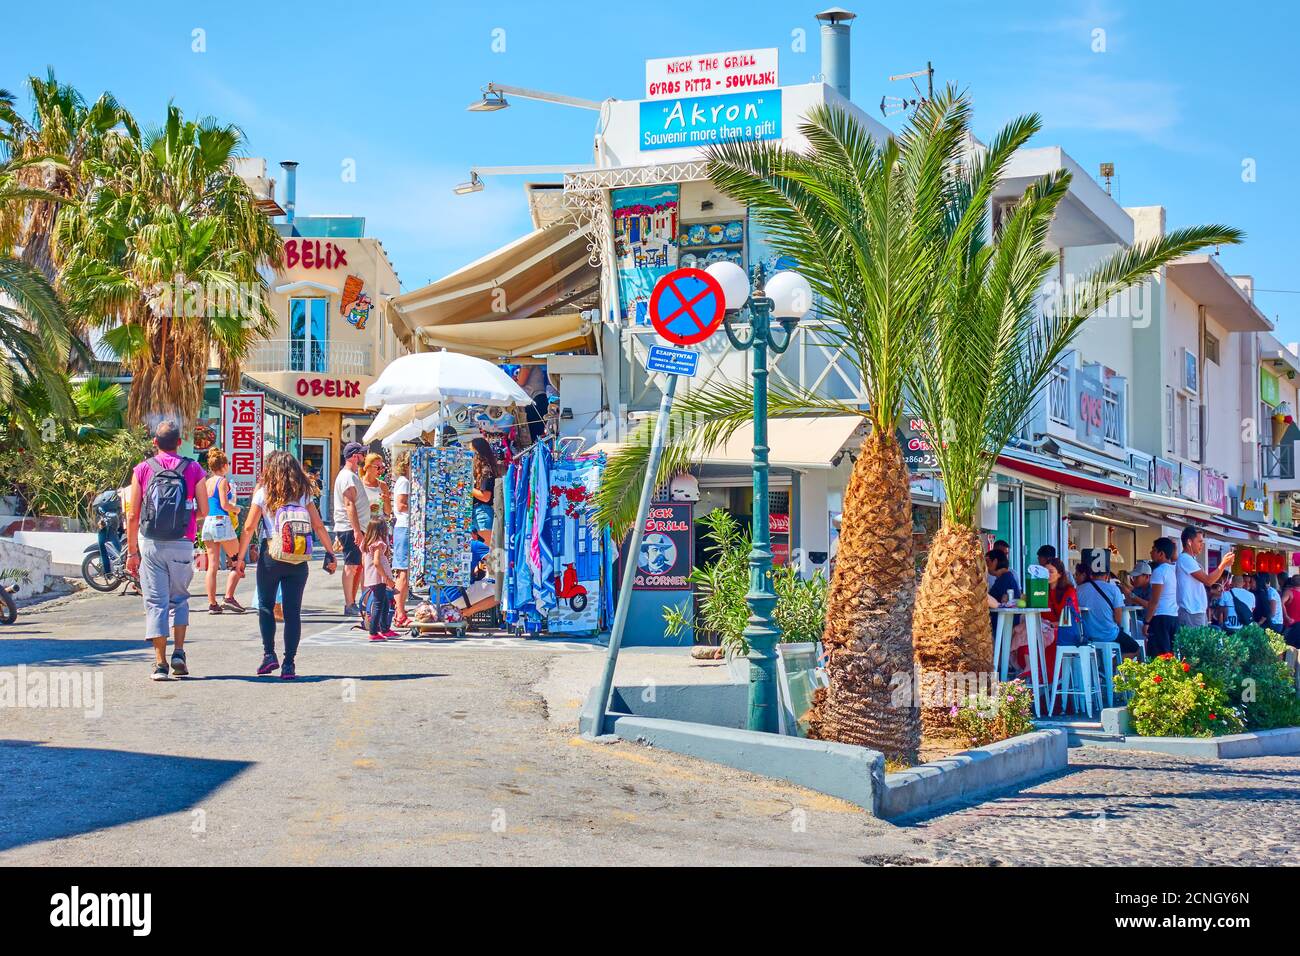 Fira, Santorini island, Greece - April 25, 2018: Shopping street with walking people in Fira (Thera) Stock Photo